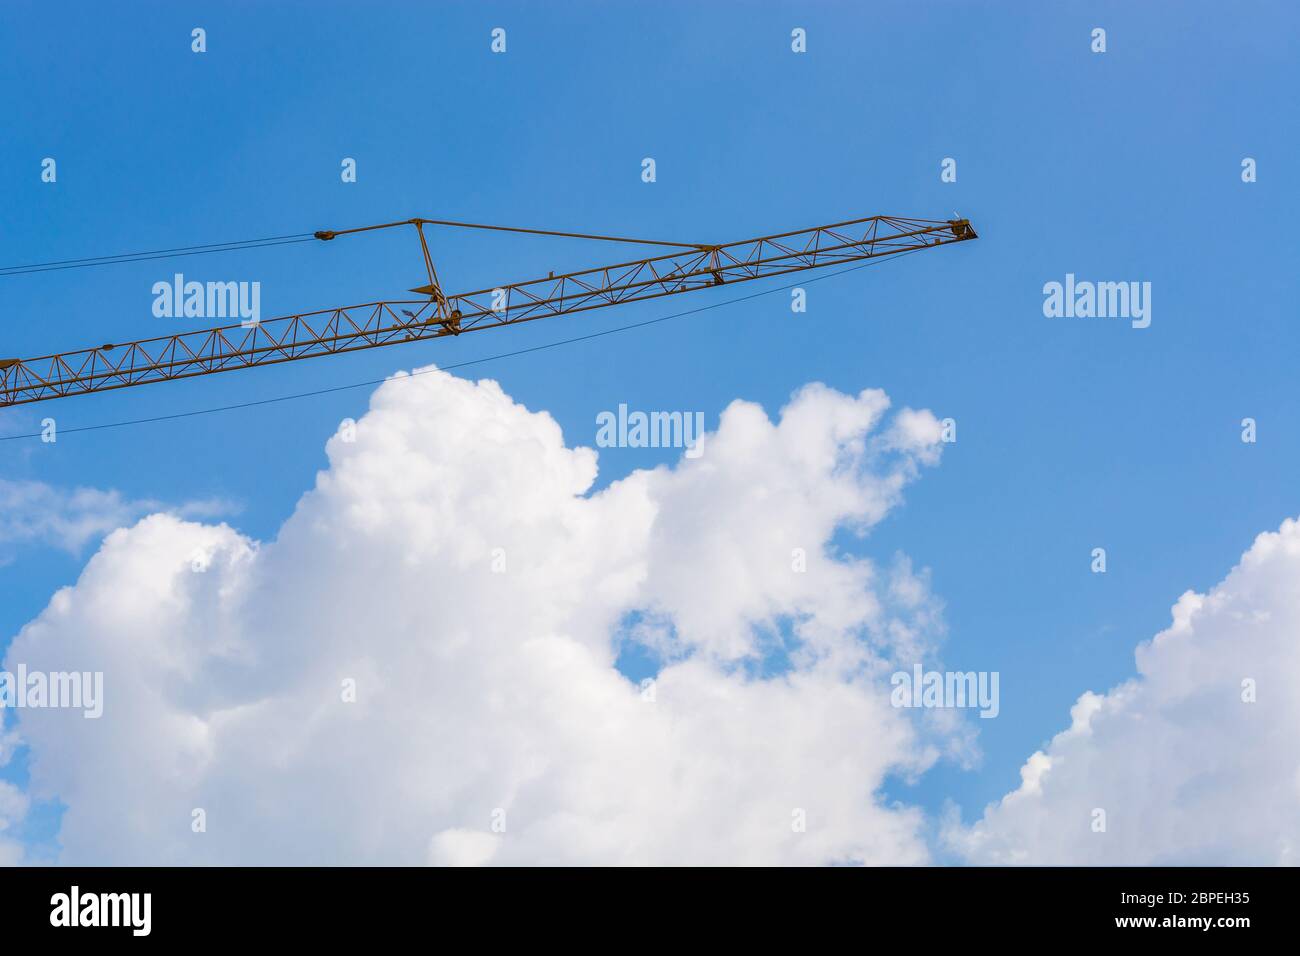 Baumaschine auf einer Baustelle im Hintergrund ein blauer Himmel. Stock Photo